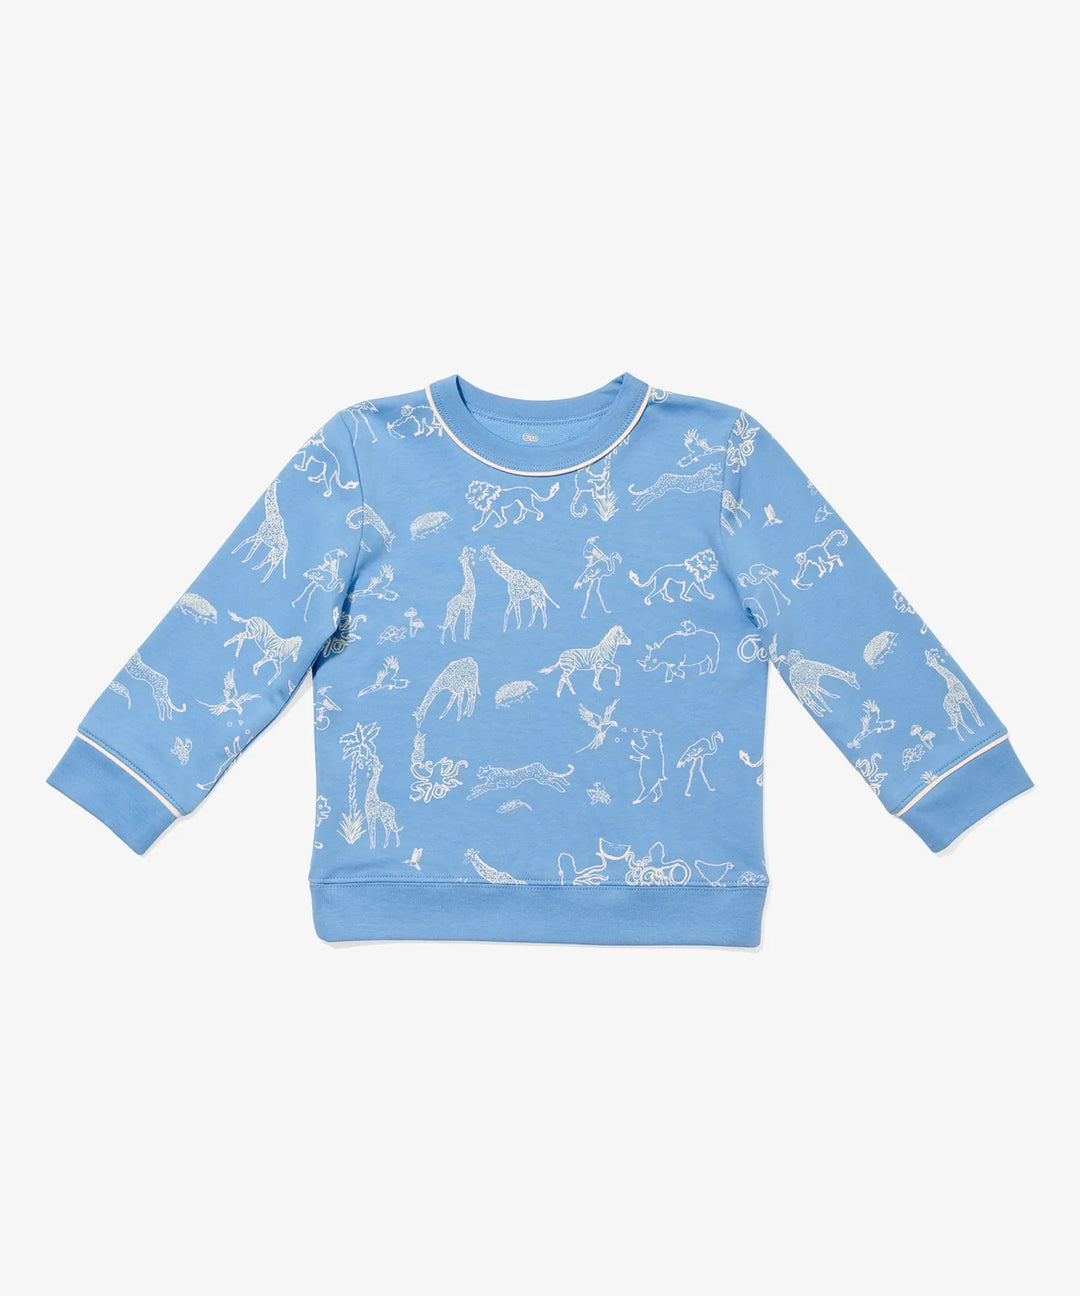 Remy Sweatshirt, Ocean Animal Parade